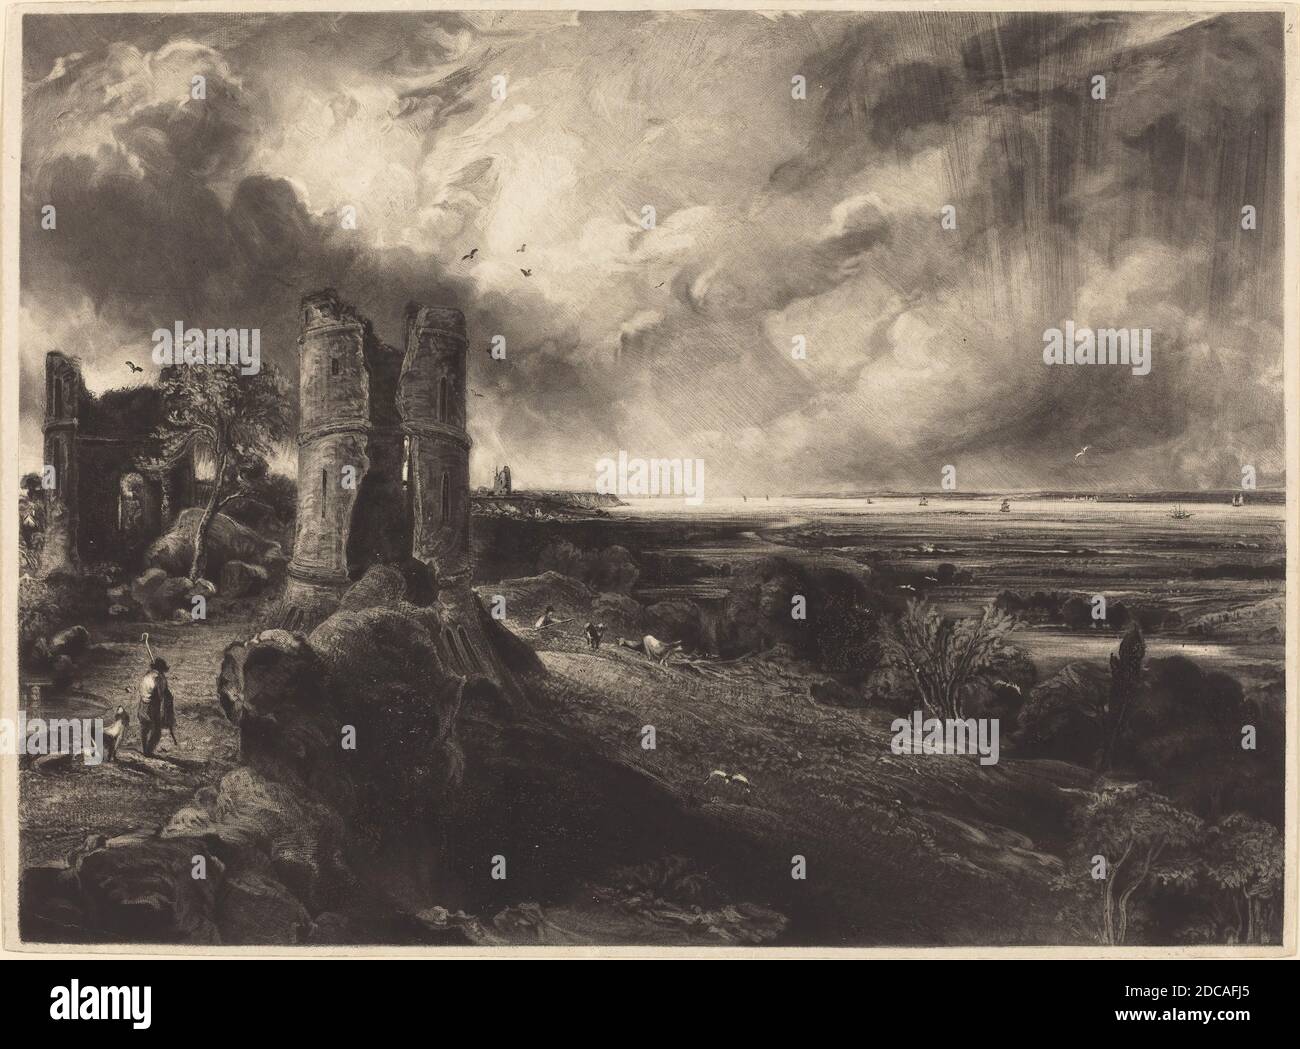 David Lucas, (artista), British, 1802 - 1881, John Constable, (artista dopo), British, 1776 - 1837, Castello di Hadleigh (piatto grande), 1830 e 1832, mezzotint, piatto: 26.7 x 36.5 cm (10 1/2 x 14 3/8 pollici), foglio: 27.2 x 37.4 cm (10 11/16 x 14 3/4 pollici), totale (formato tappetino): 40.6 x 55.9 cm (16 x 22 pollici Foto Stock